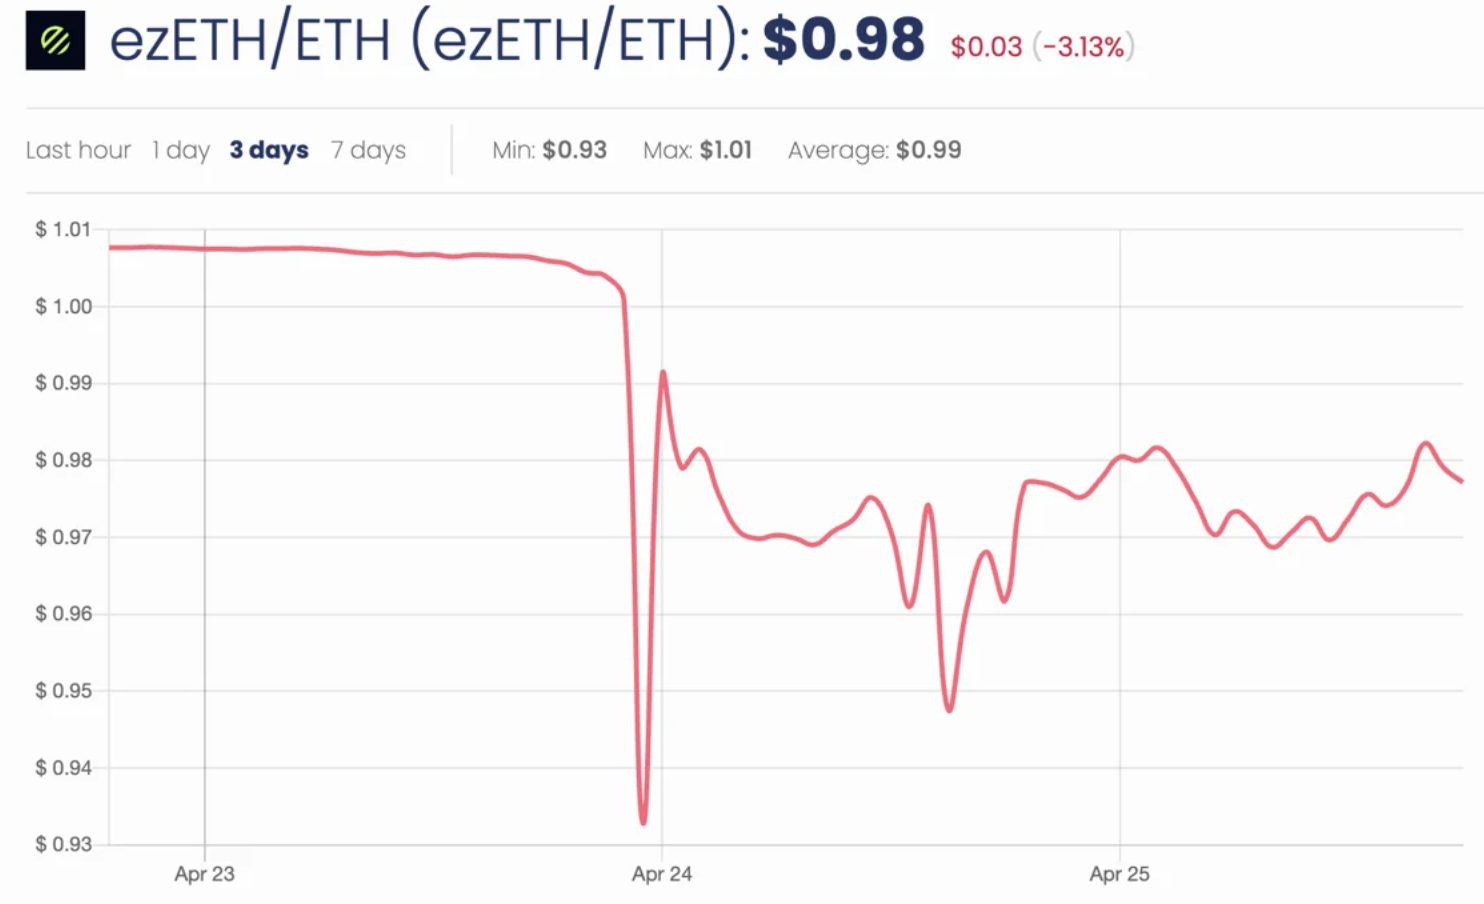 ezETH depeg pone la volatilidad de la recuperación de ETH en el centro de atención